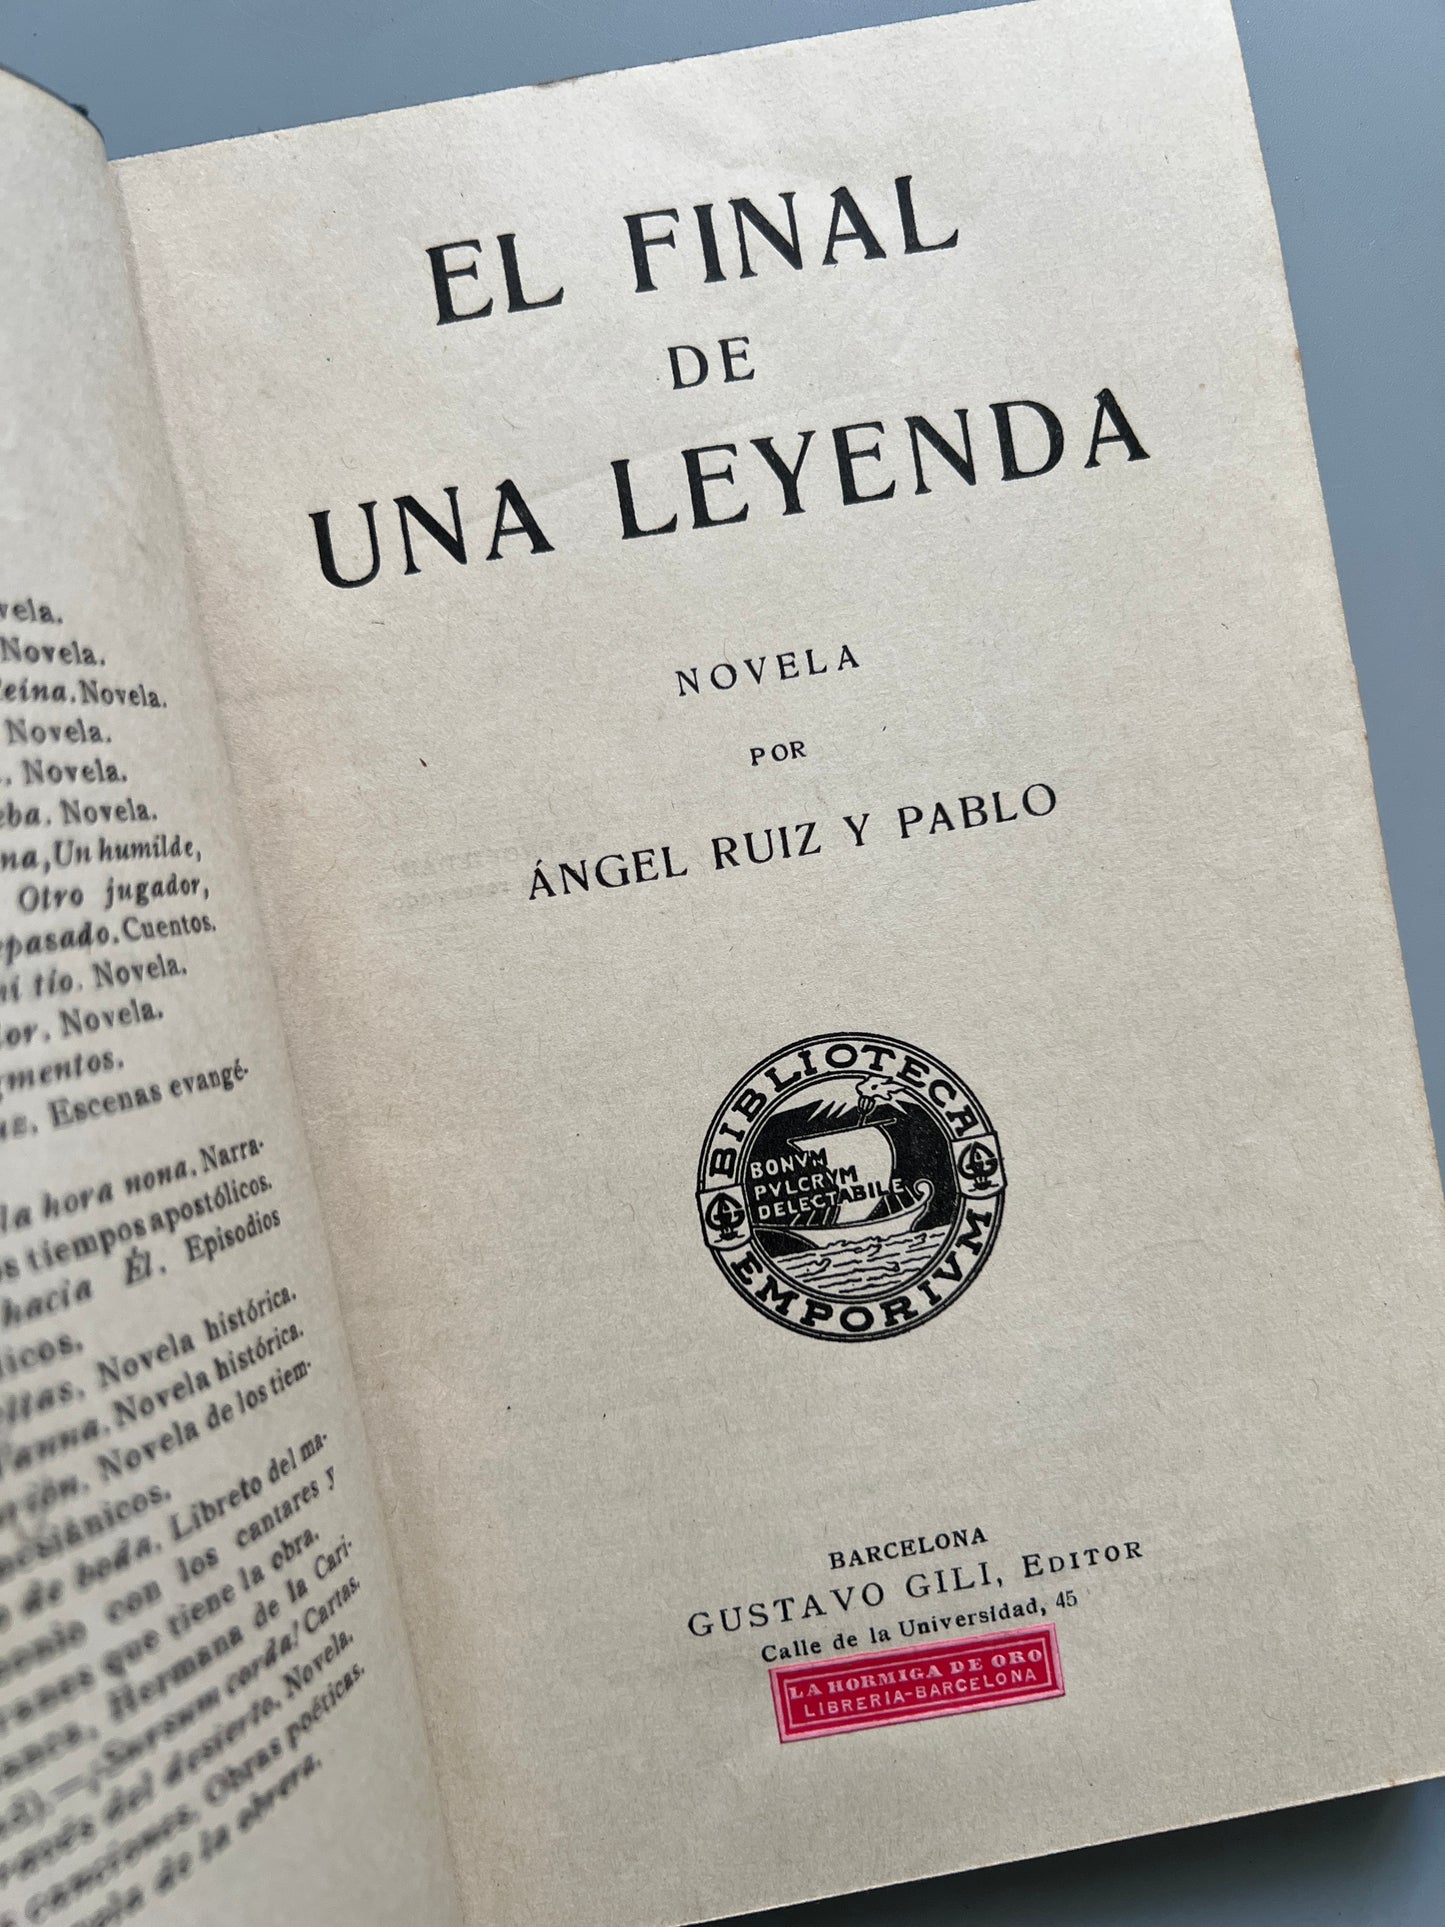 El final de una leyenda, Ángel Ruiz y Pablo - Gustavo Gili Editor, ca. 1920